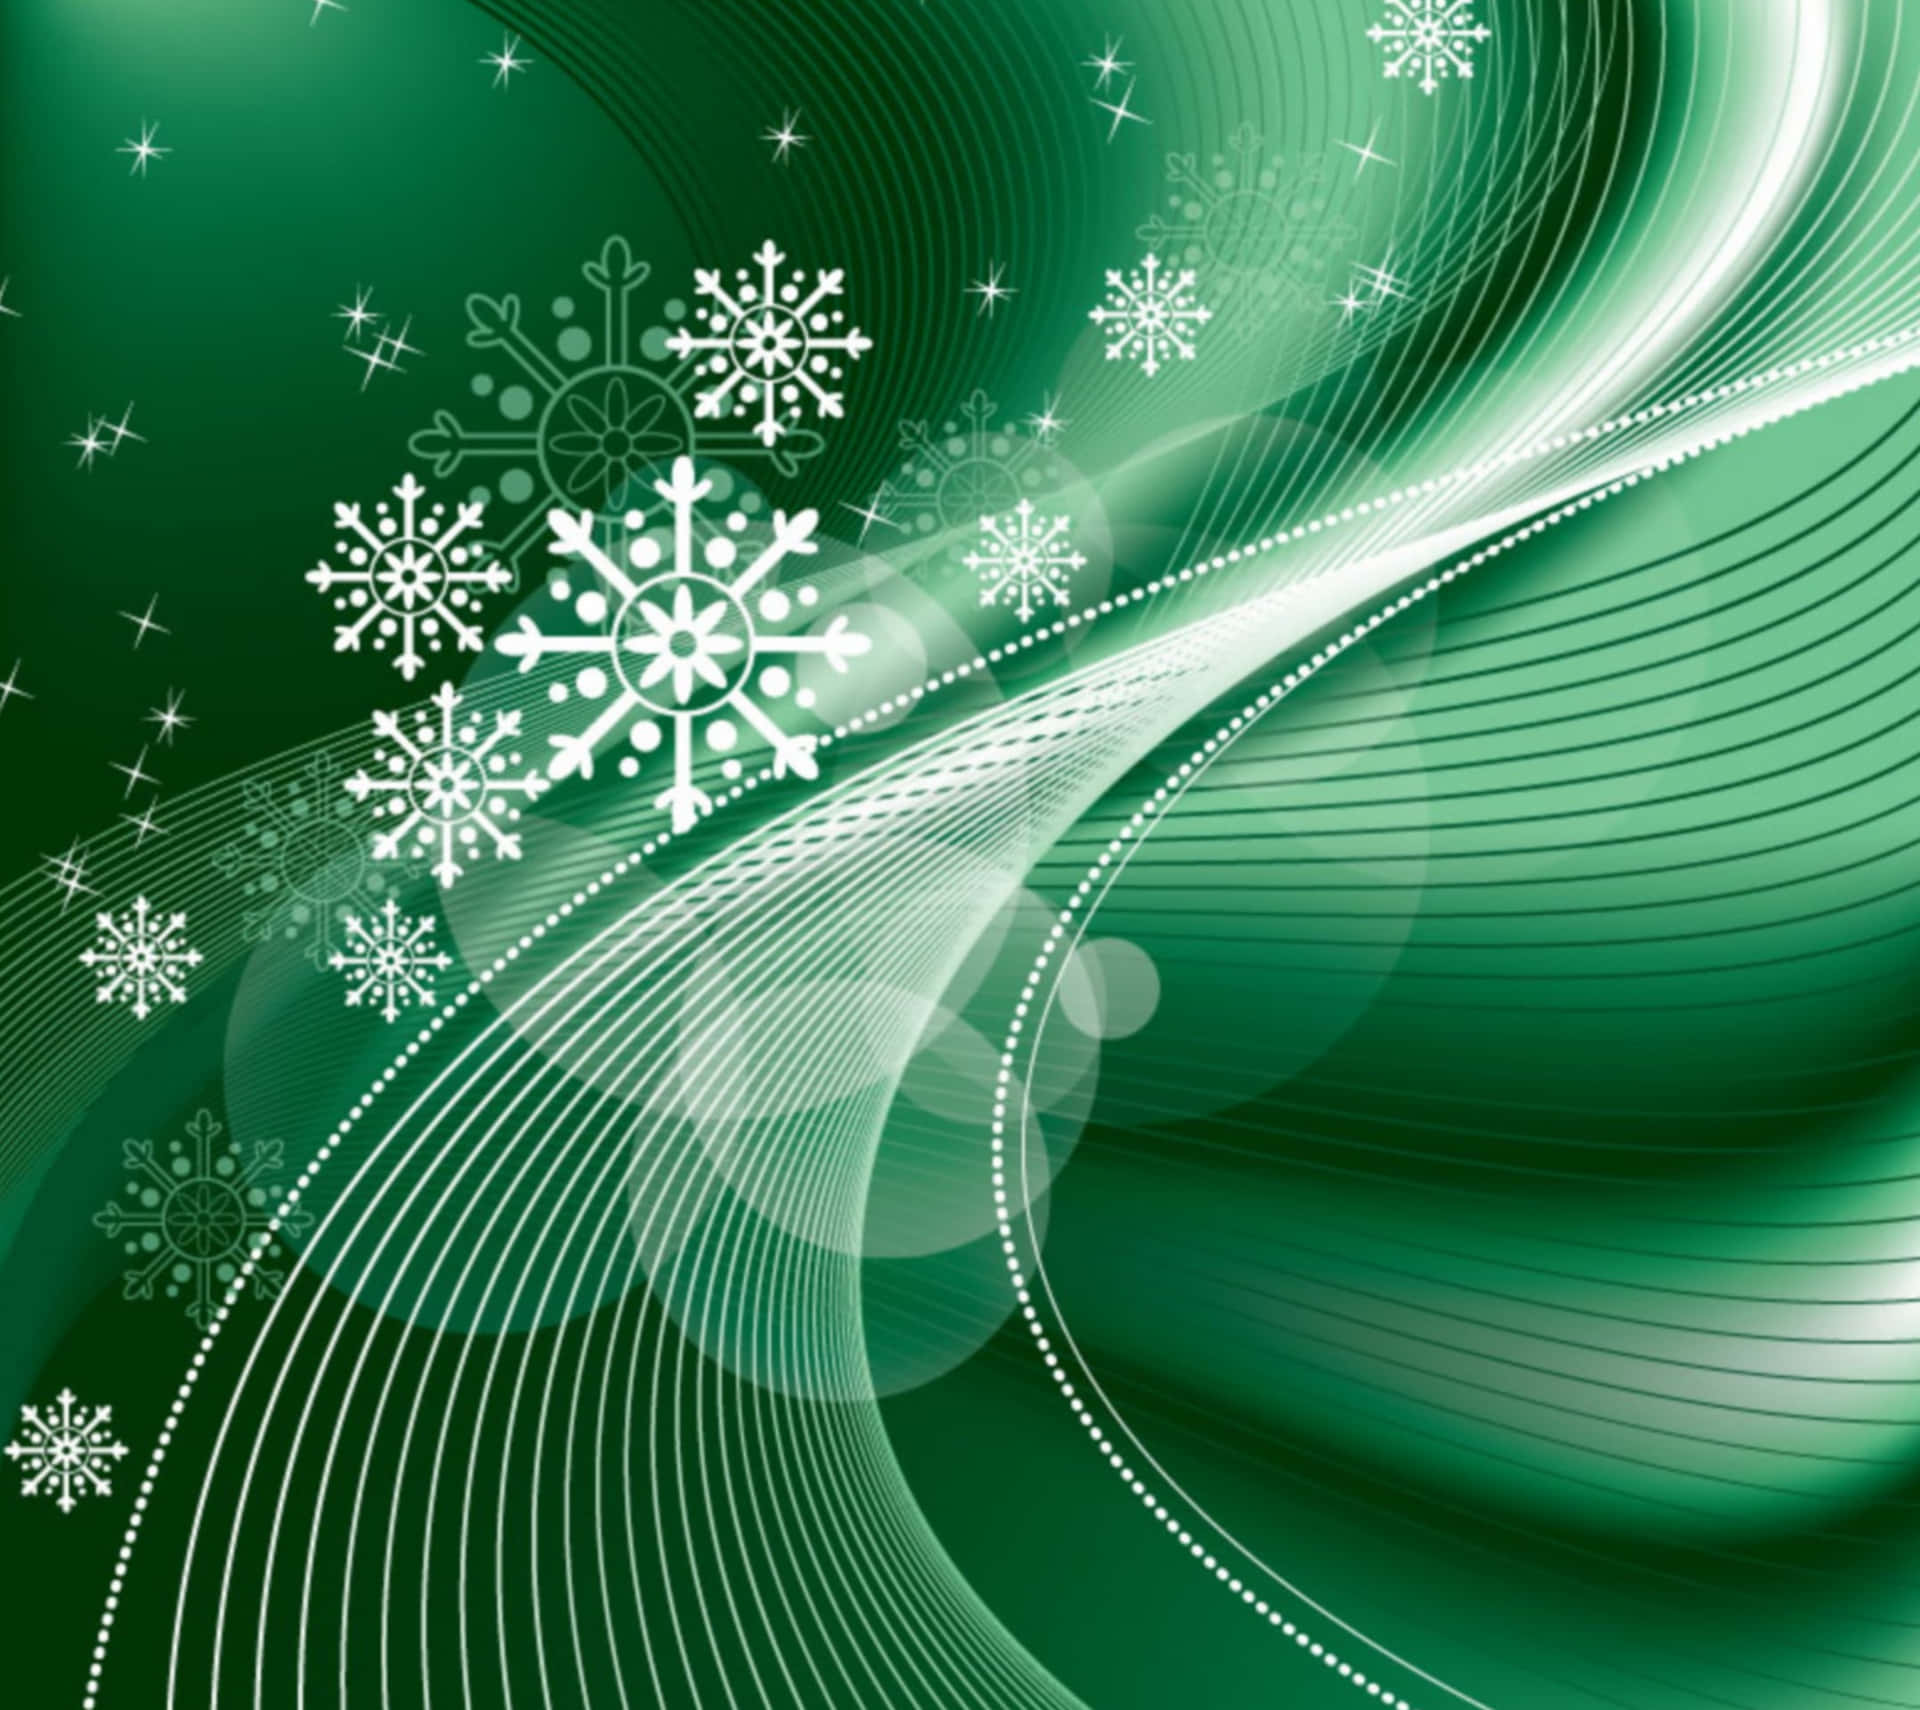 Celebrauna Navidad Eco-amigable Con Un Fondo Festivo En Verde Y Blanco.